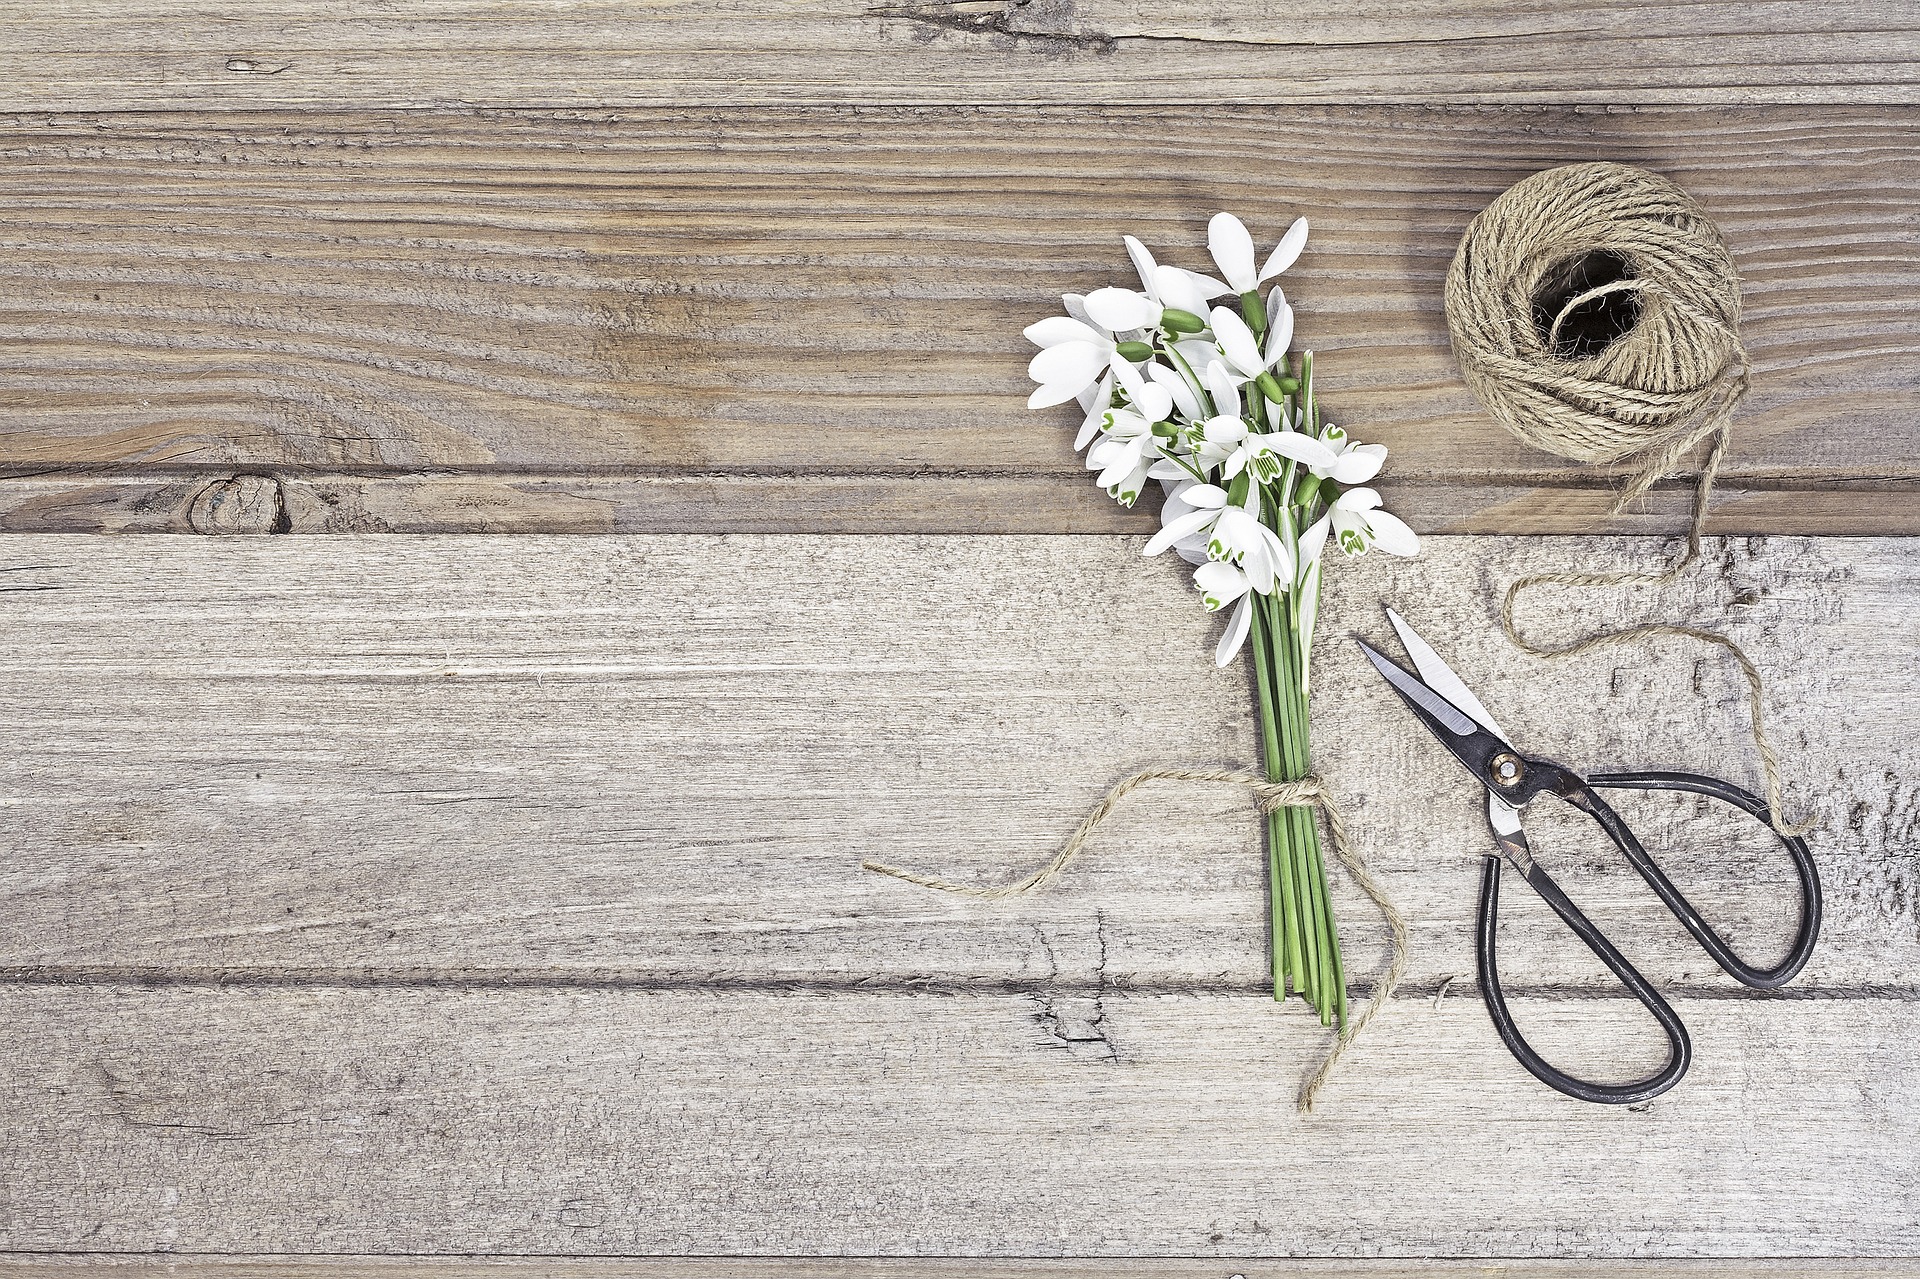 Flower wood мм2. Фотофон с ножницами. Нитки и ножницы цветы. Деревянный фотофон ножницы. Весенний фон для инстаграмма с ножницами и нитками.